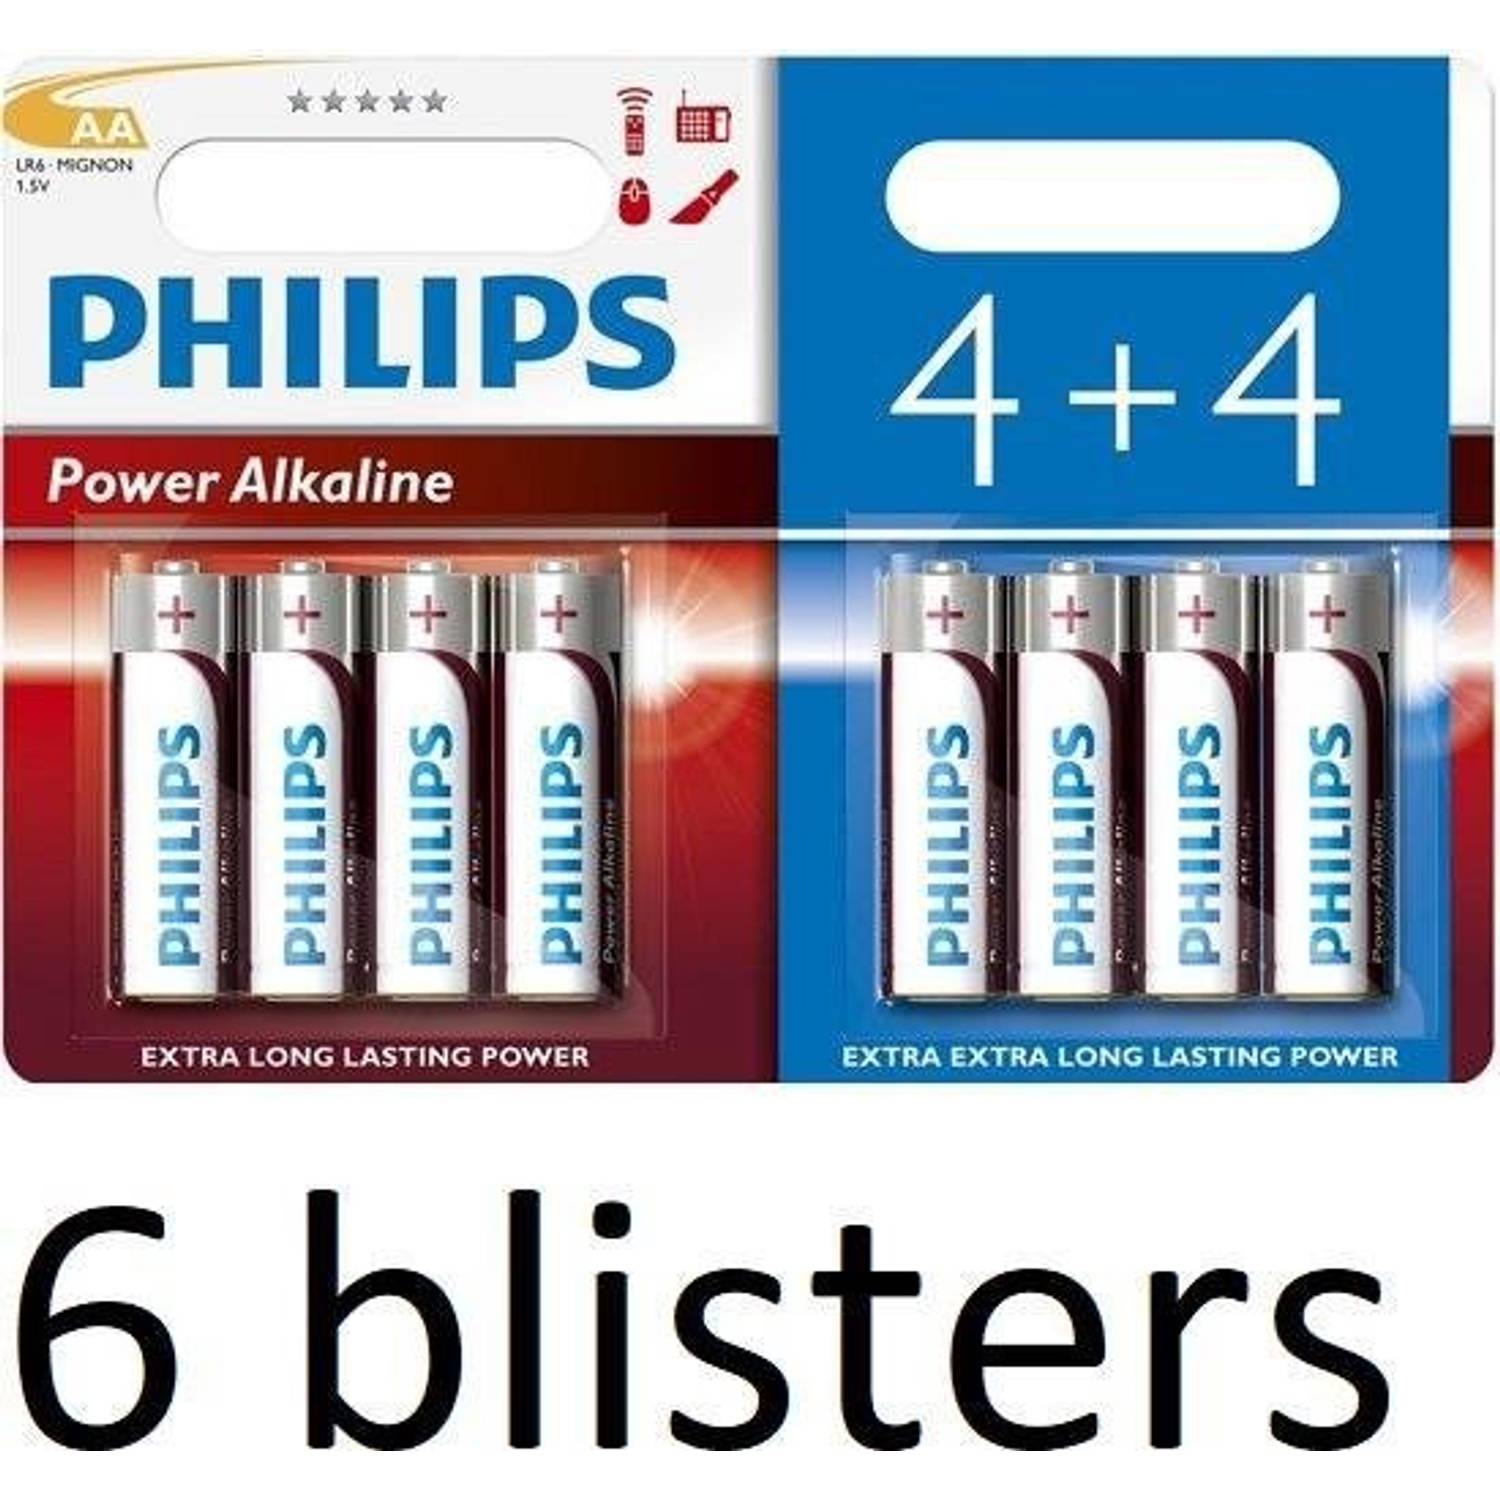 48 Stuks (6 Blisters a 8 st) Philips Power Alkaline Batterij LR6P8BP/10